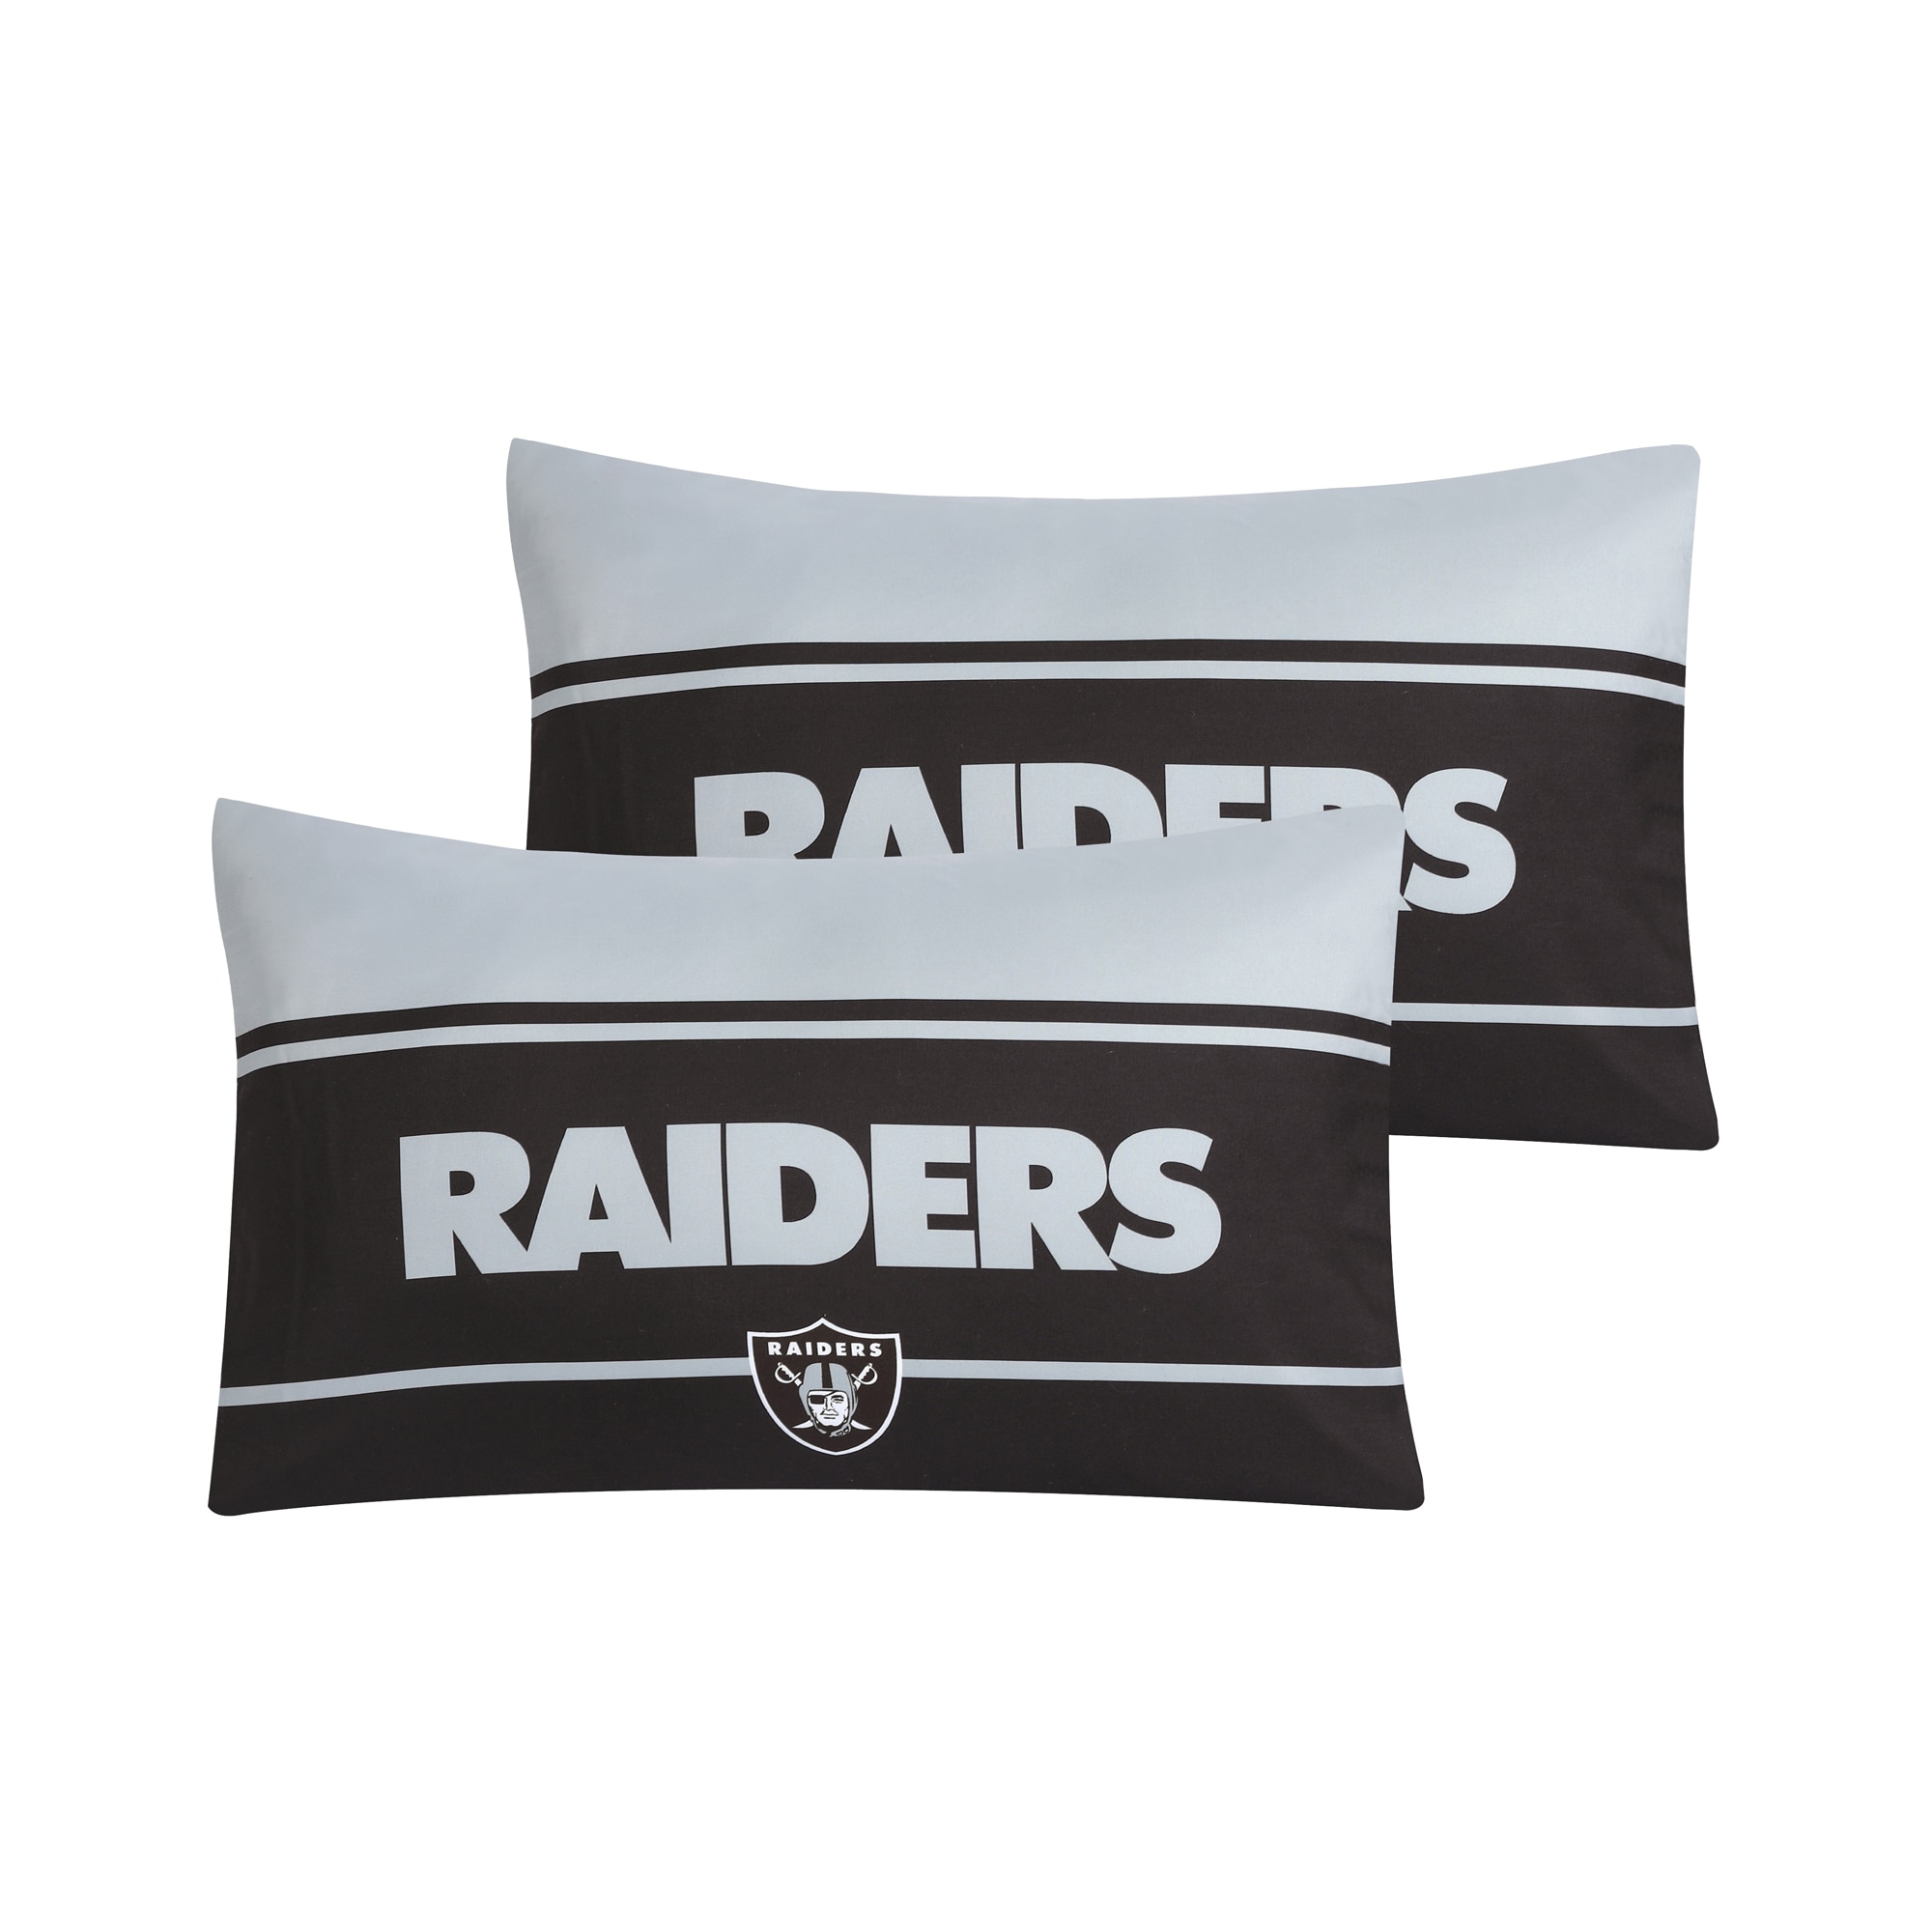 Las Vegas Raiders NFL Licensed Status Bed In A Bag Comforter